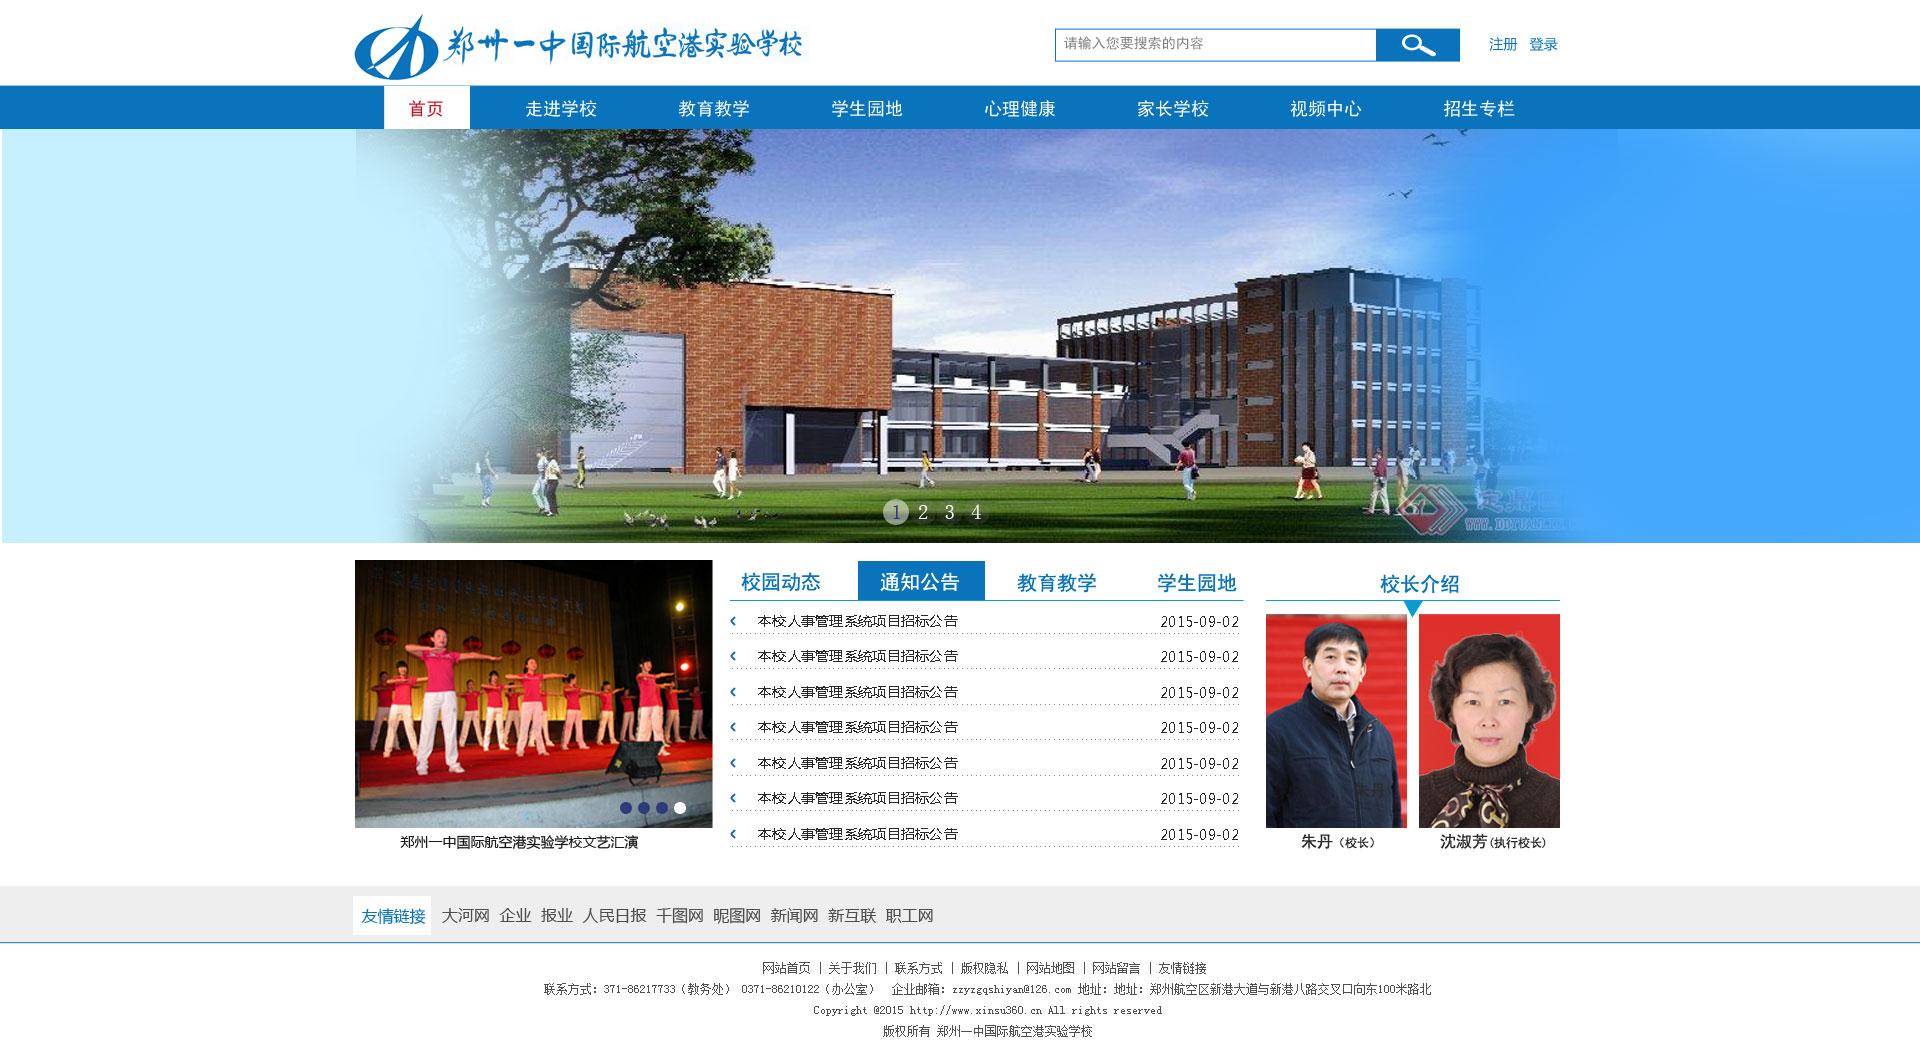 郑州一中国际航空港实验学校网站建设效果图定效果图效果图